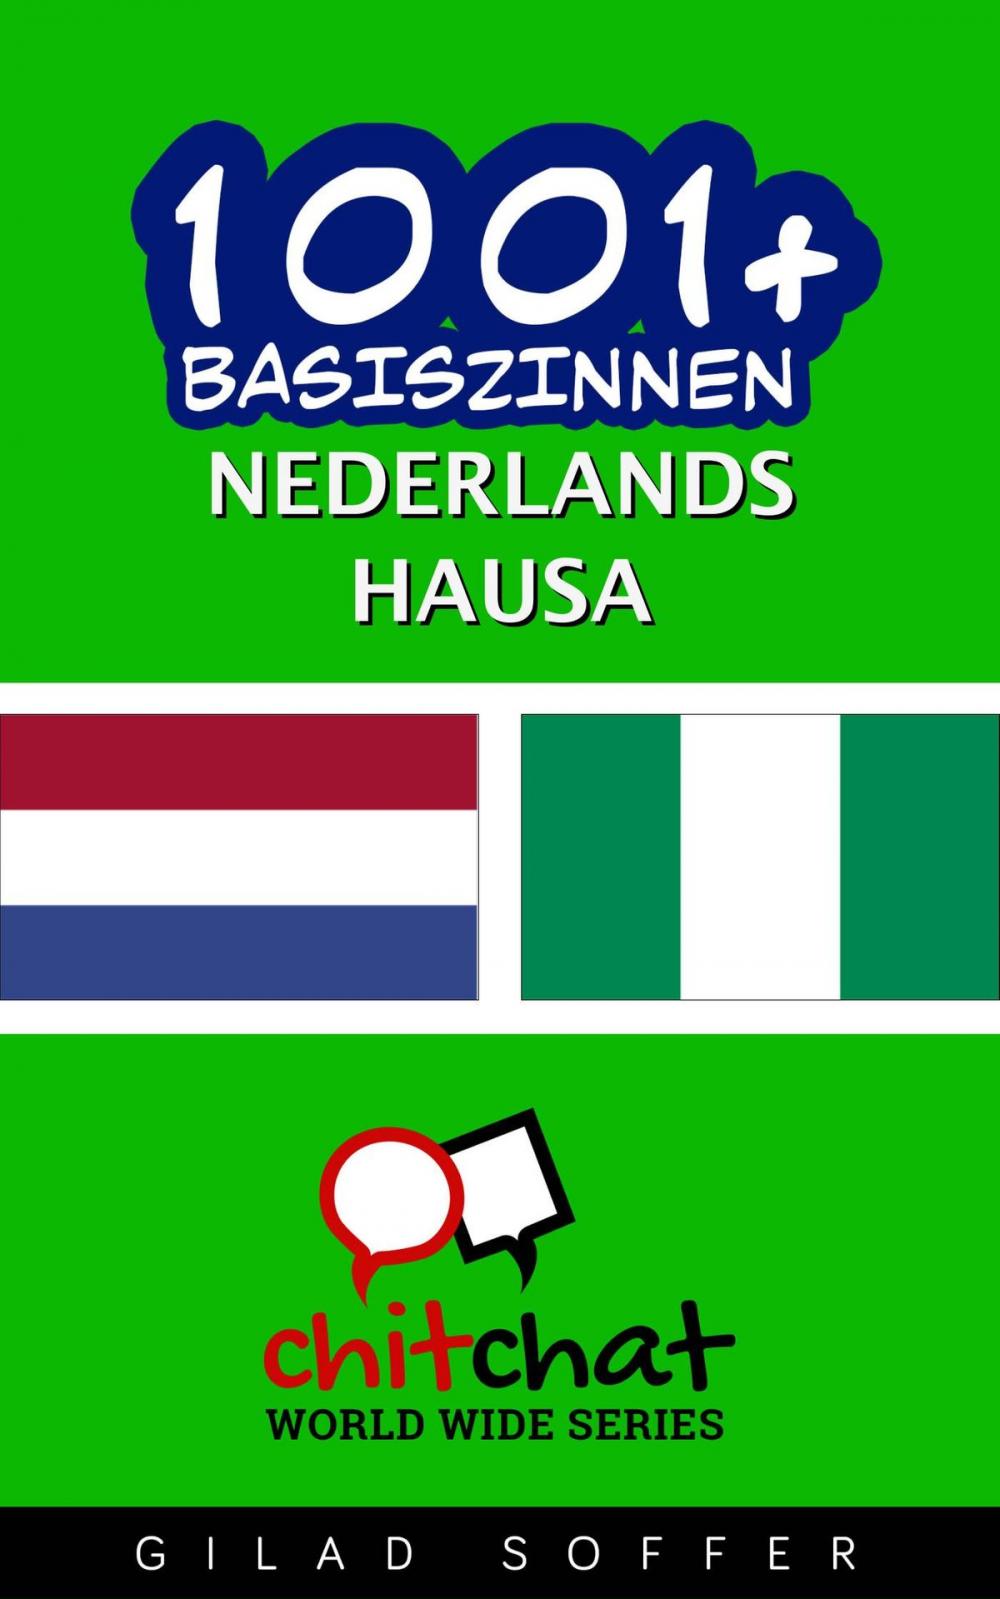 Big bigCover of 1001+ basiszinnen nederlands - Hausa